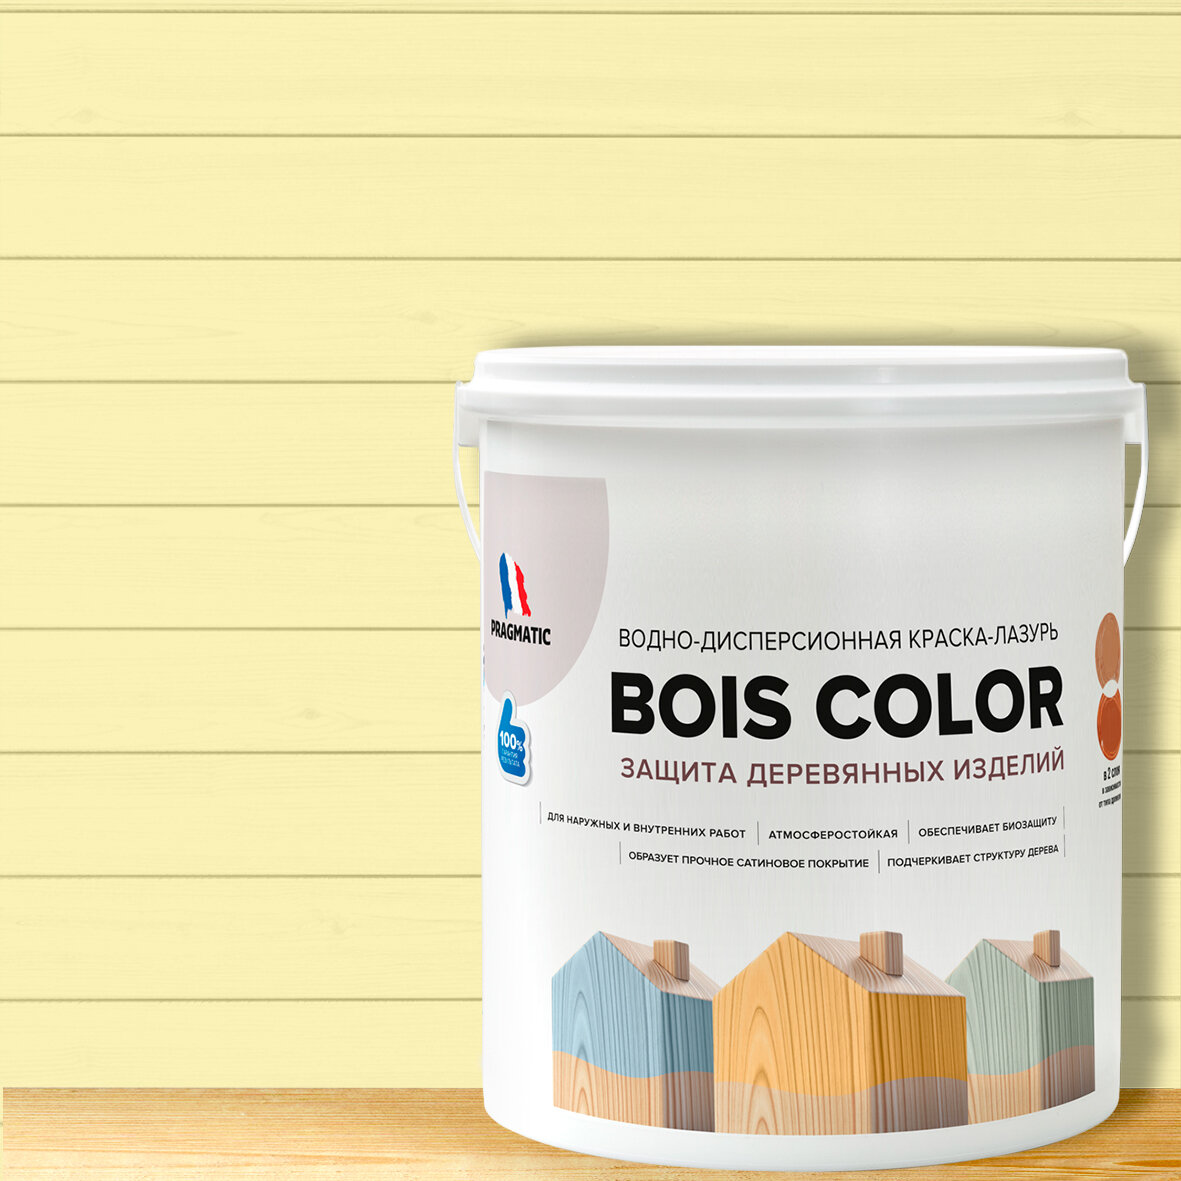 Краска (лазурь) для деревянных поверхностей и фасадов, обеспечивает биозащиту, защищает от плесени, грибков, атмосферостойкая, водоотталкивающая BOIS COLOR 0,9 л цвет Светло желтый 7865